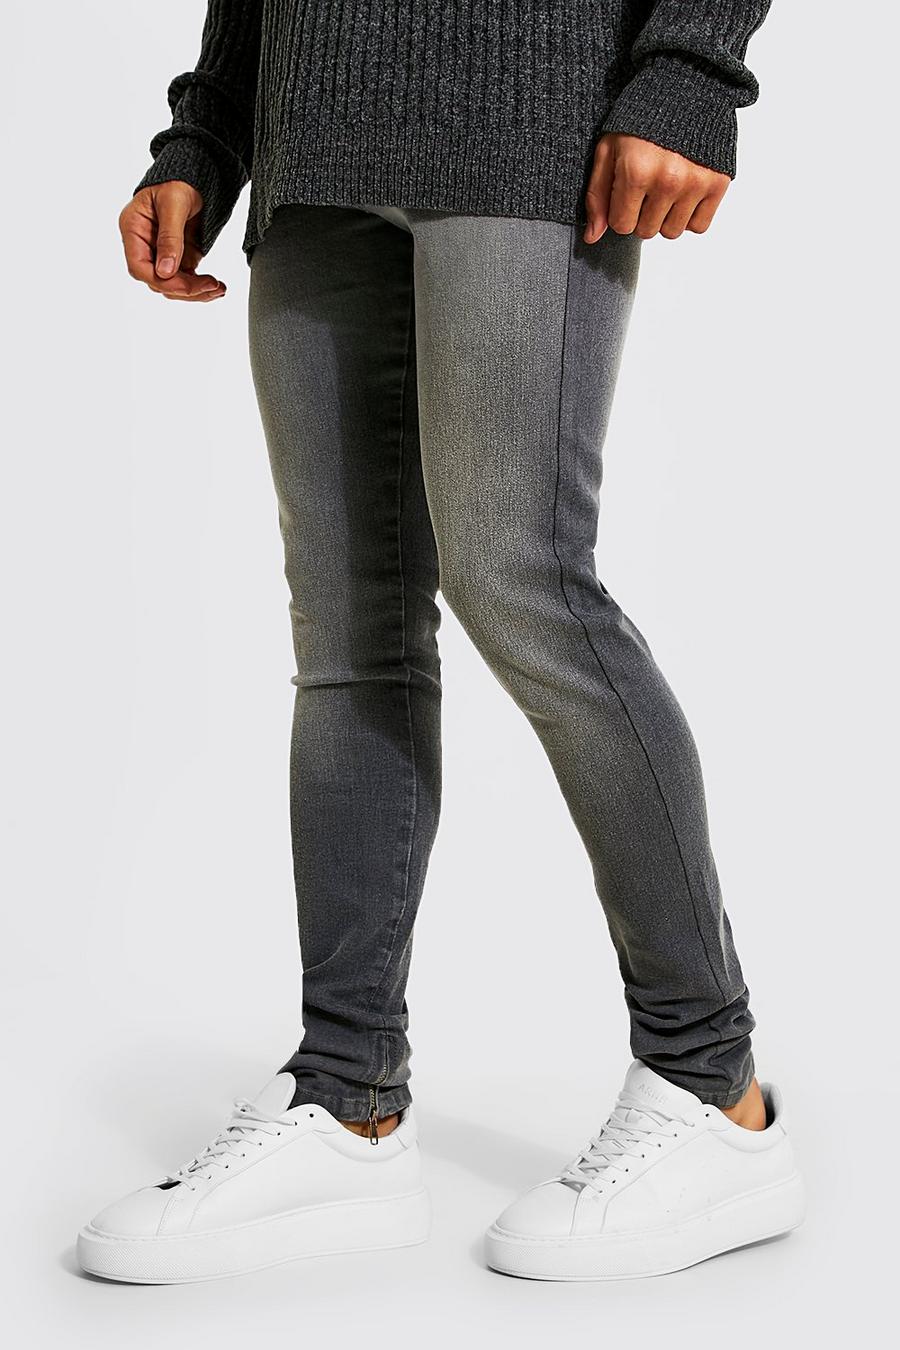 אפור ביניים gris סקיני ג'ינס עם רוכסן במכפלת וקצוות נערמים